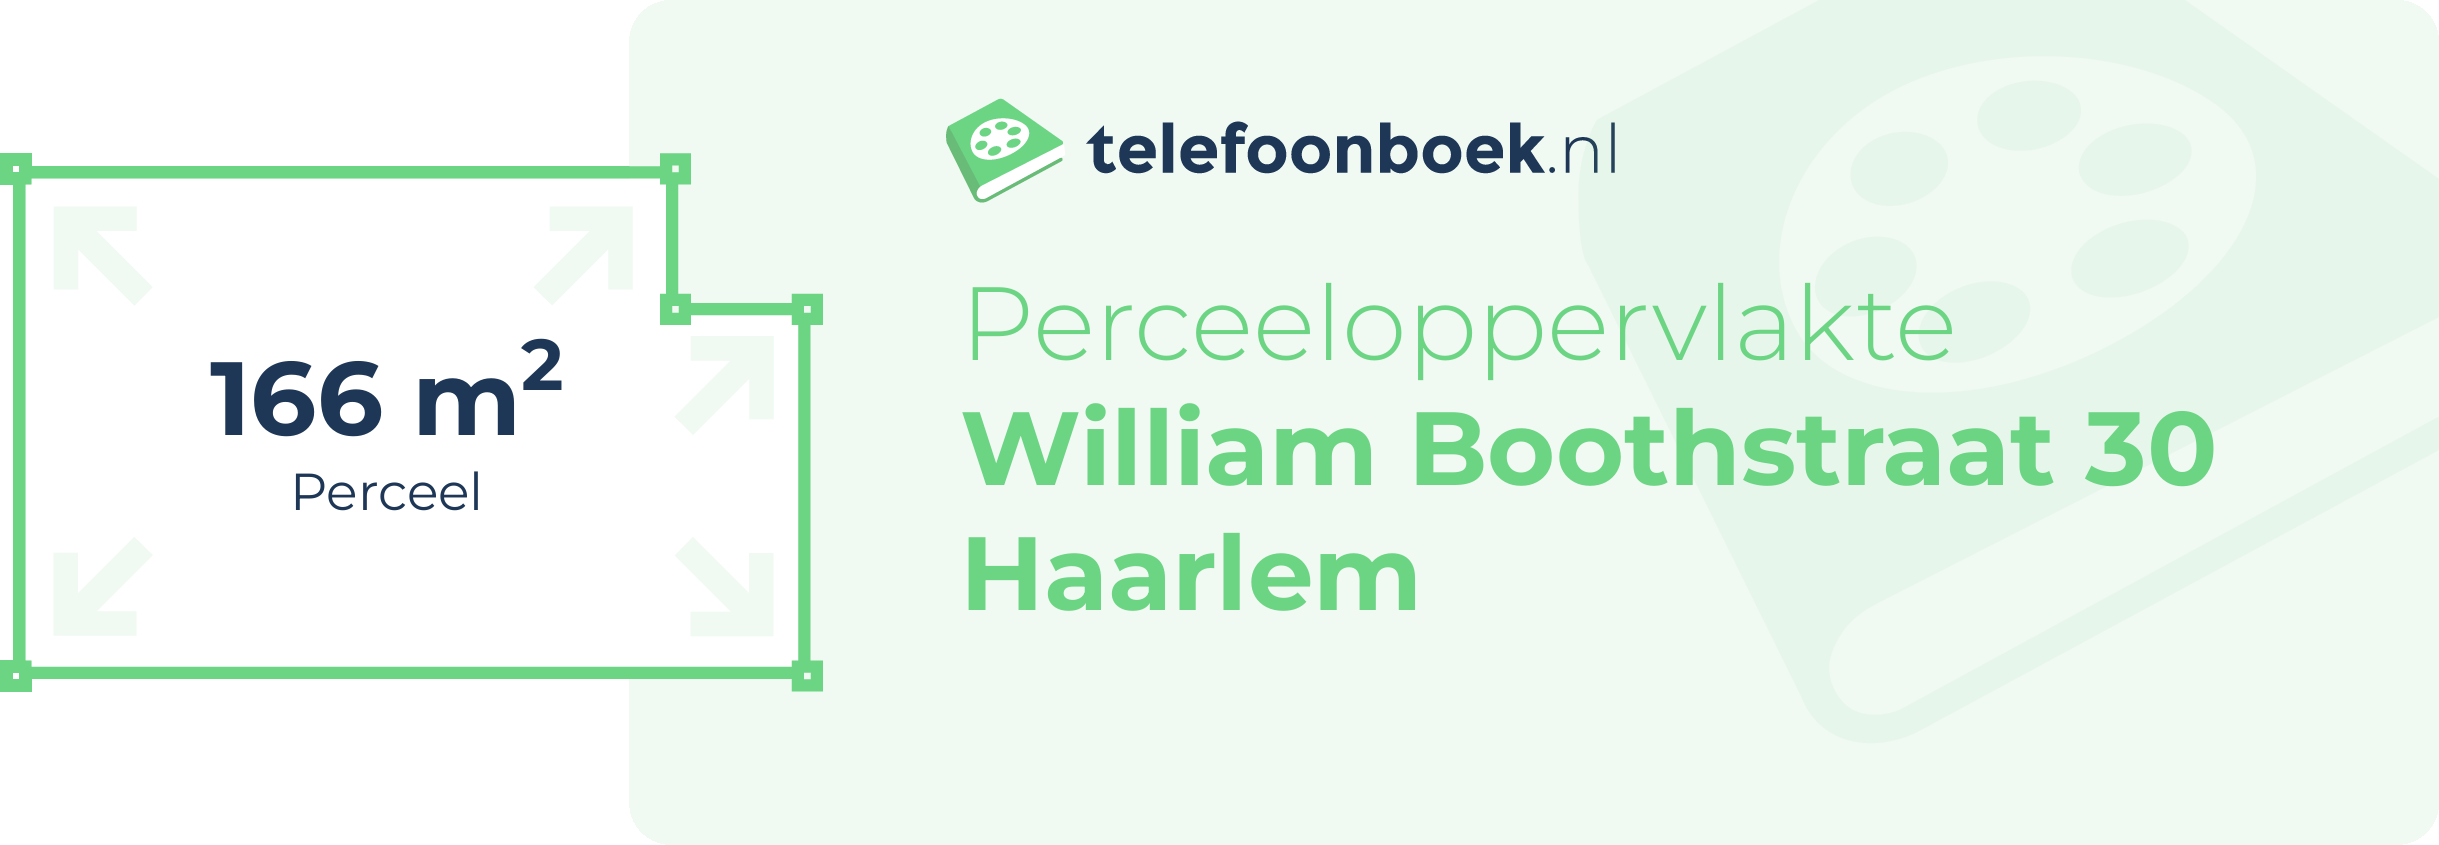 Perceeloppervlakte William Boothstraat 30 Haarlem